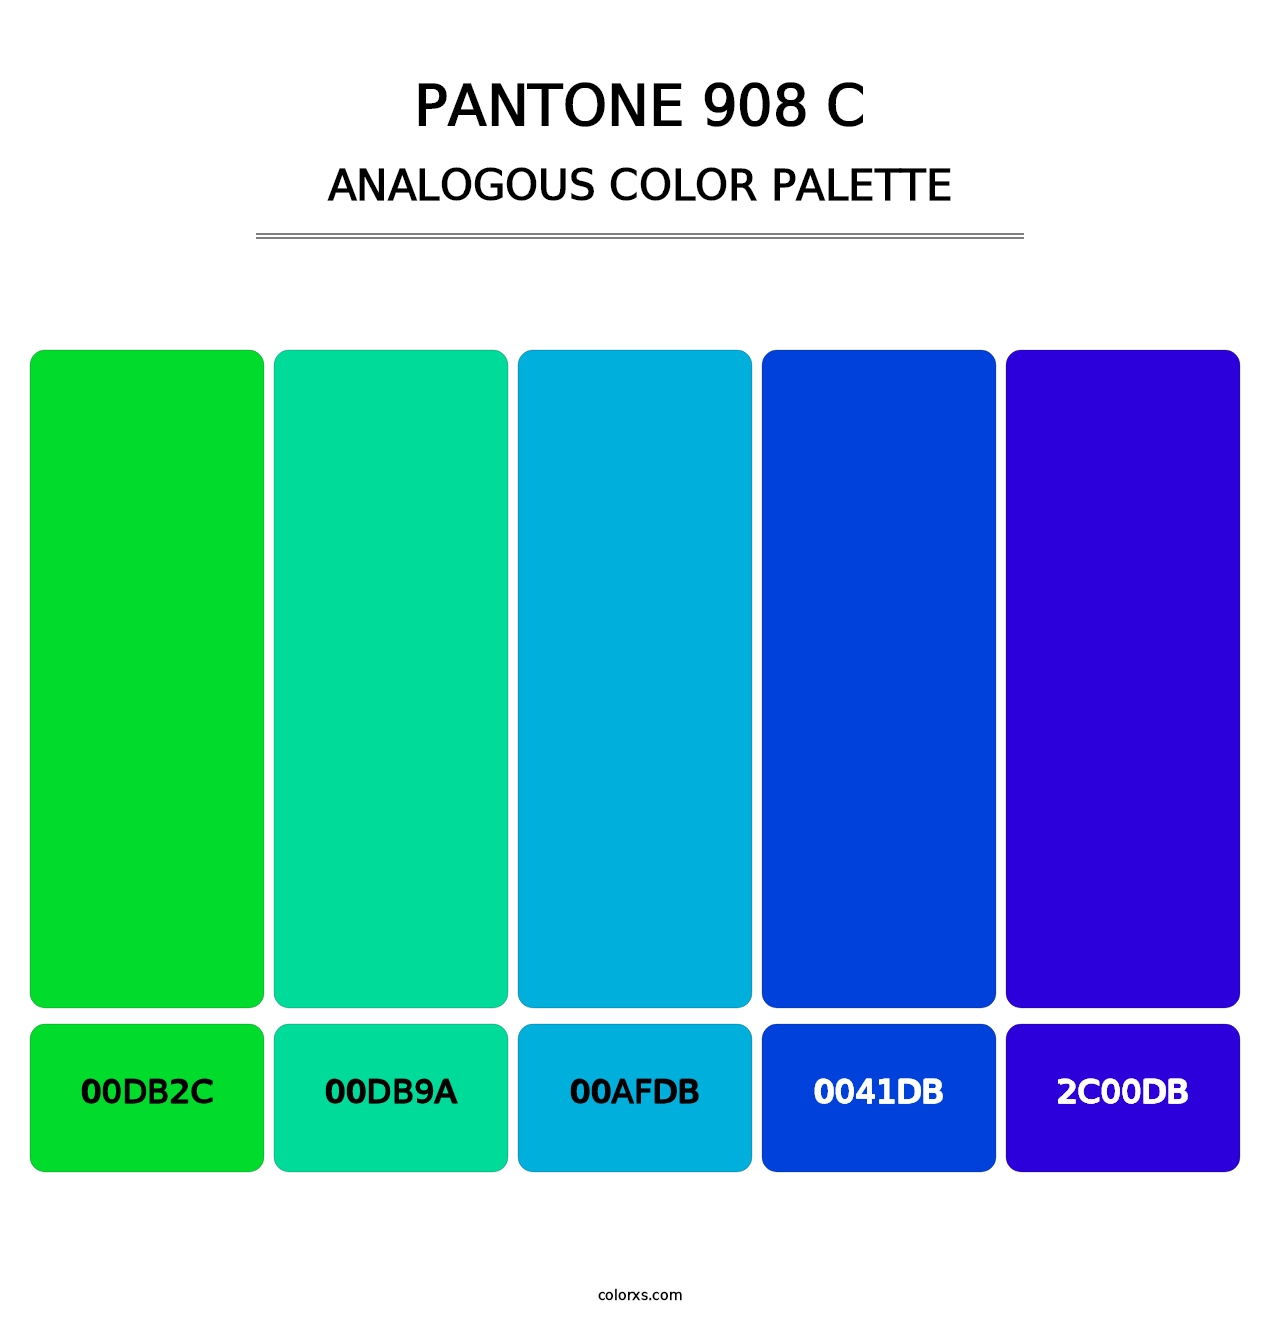 PANTONE 908 C - Analogous Color Palette